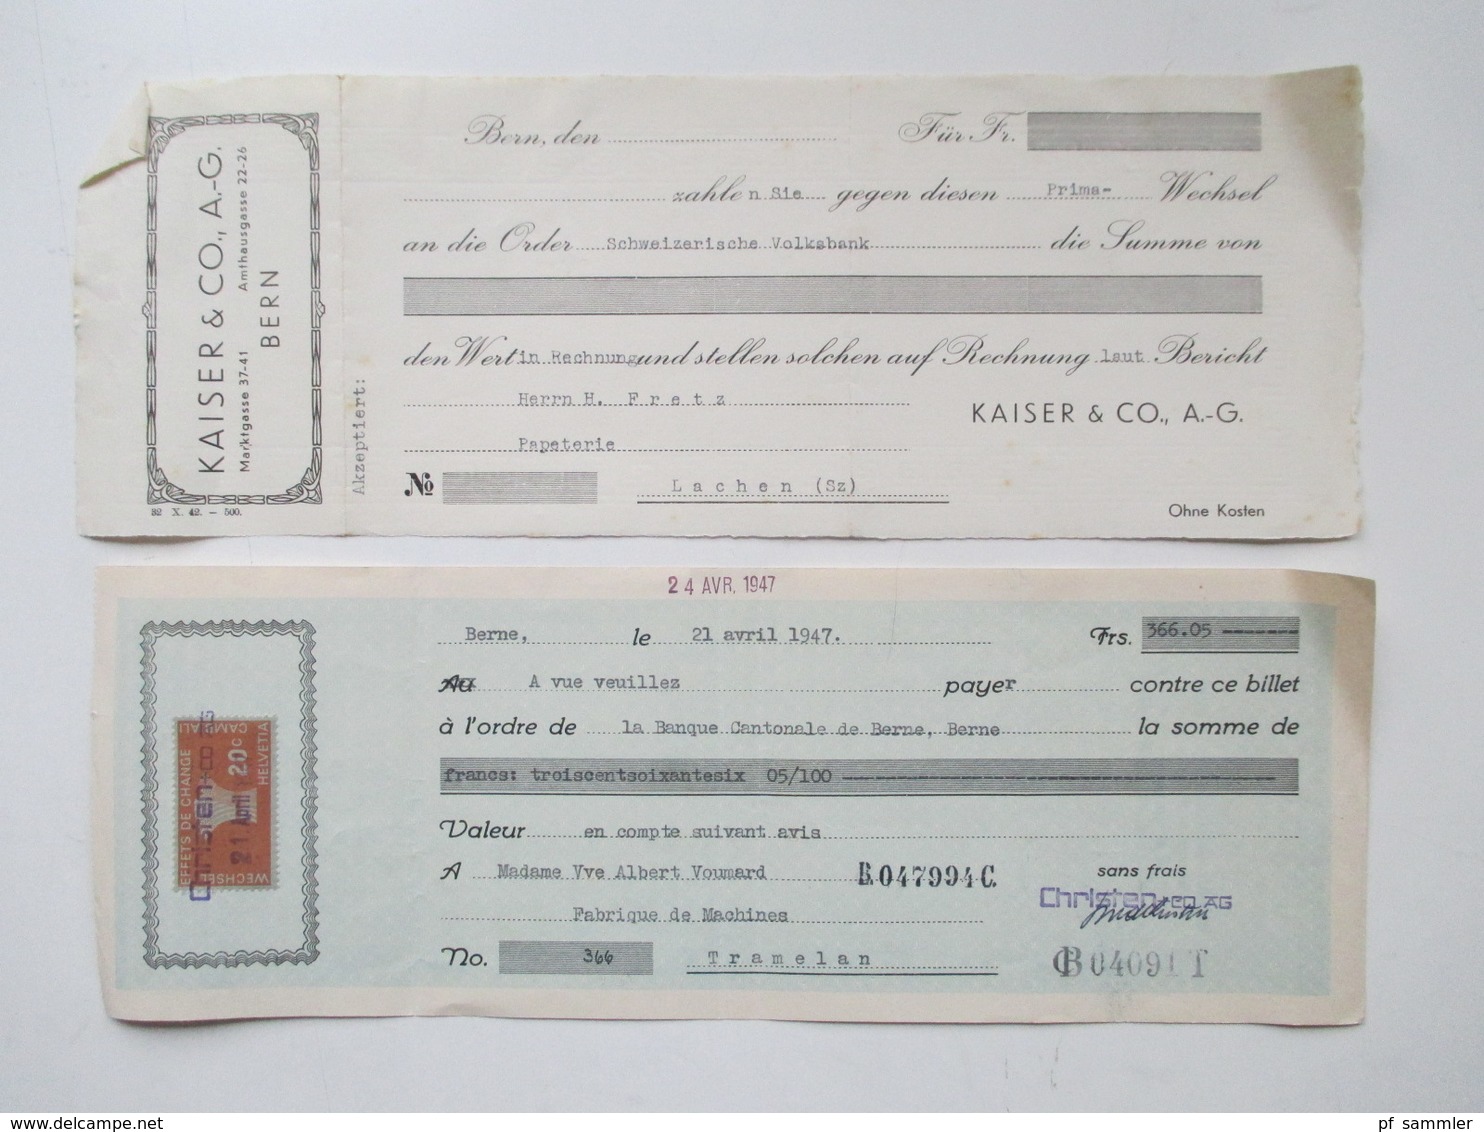 Schweiz 1900 - 1966 Wechsel / Dokumente Viele Mit Stempelmarken / Fiskalmarken. Insgesamt Ca. 100 Stück! Revenues - Steuermarken